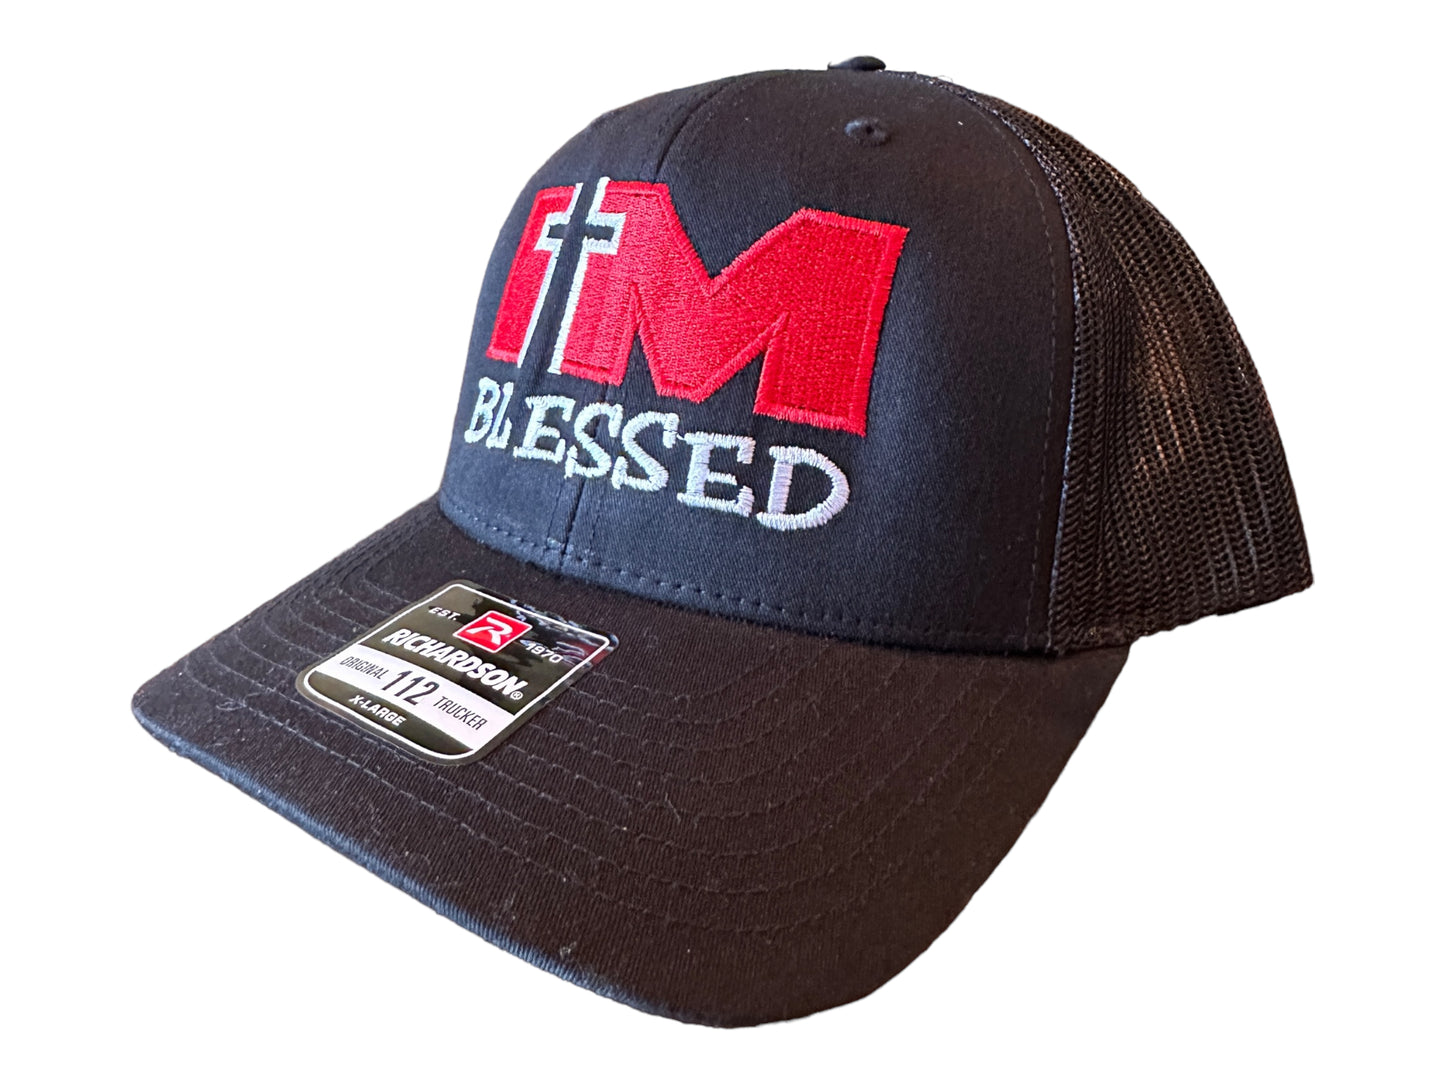 "I'm Blessed" Hat - Black